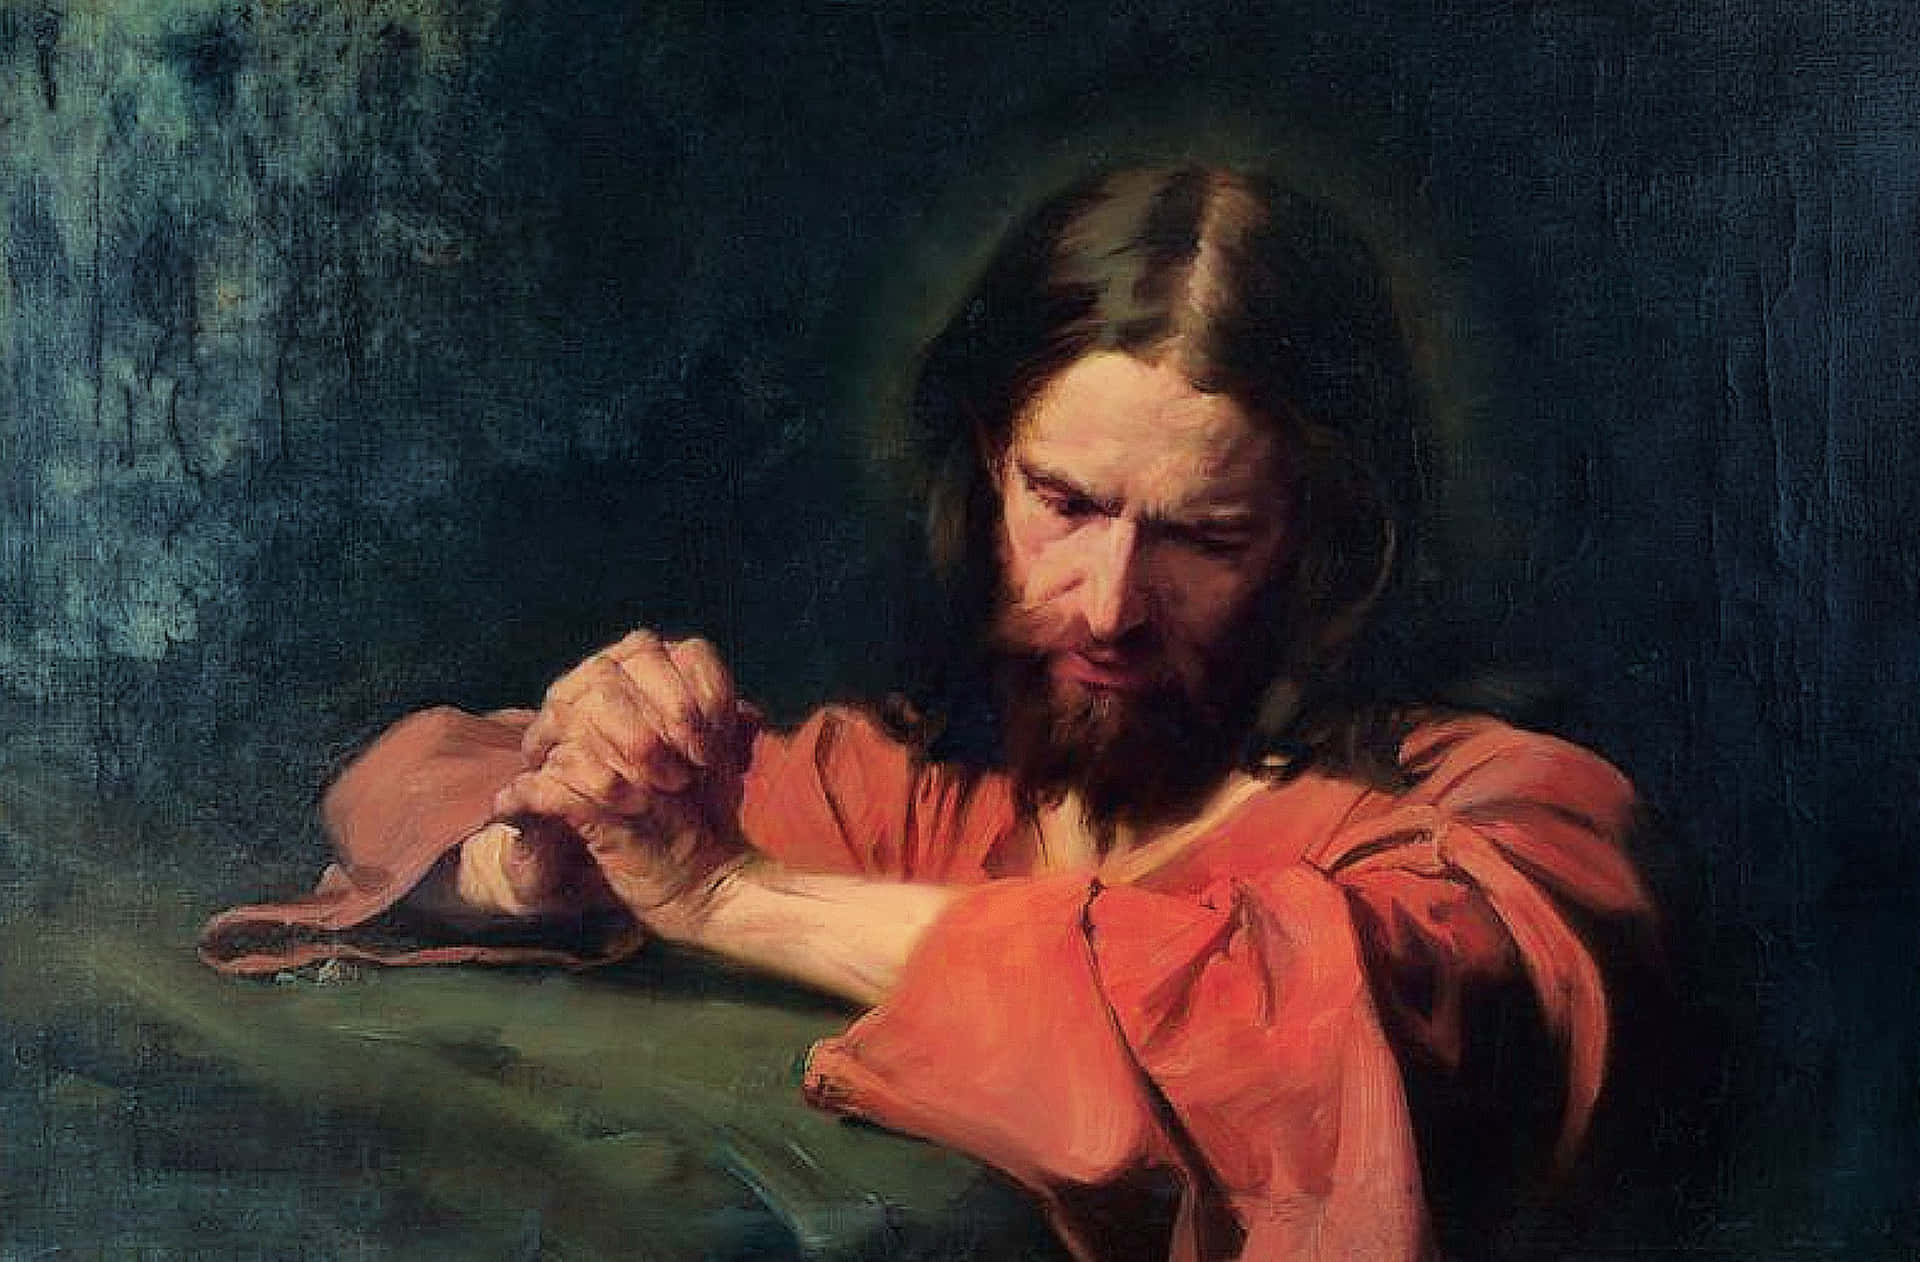 Jesuskniet In Gebetsdevotion. Wallpaper